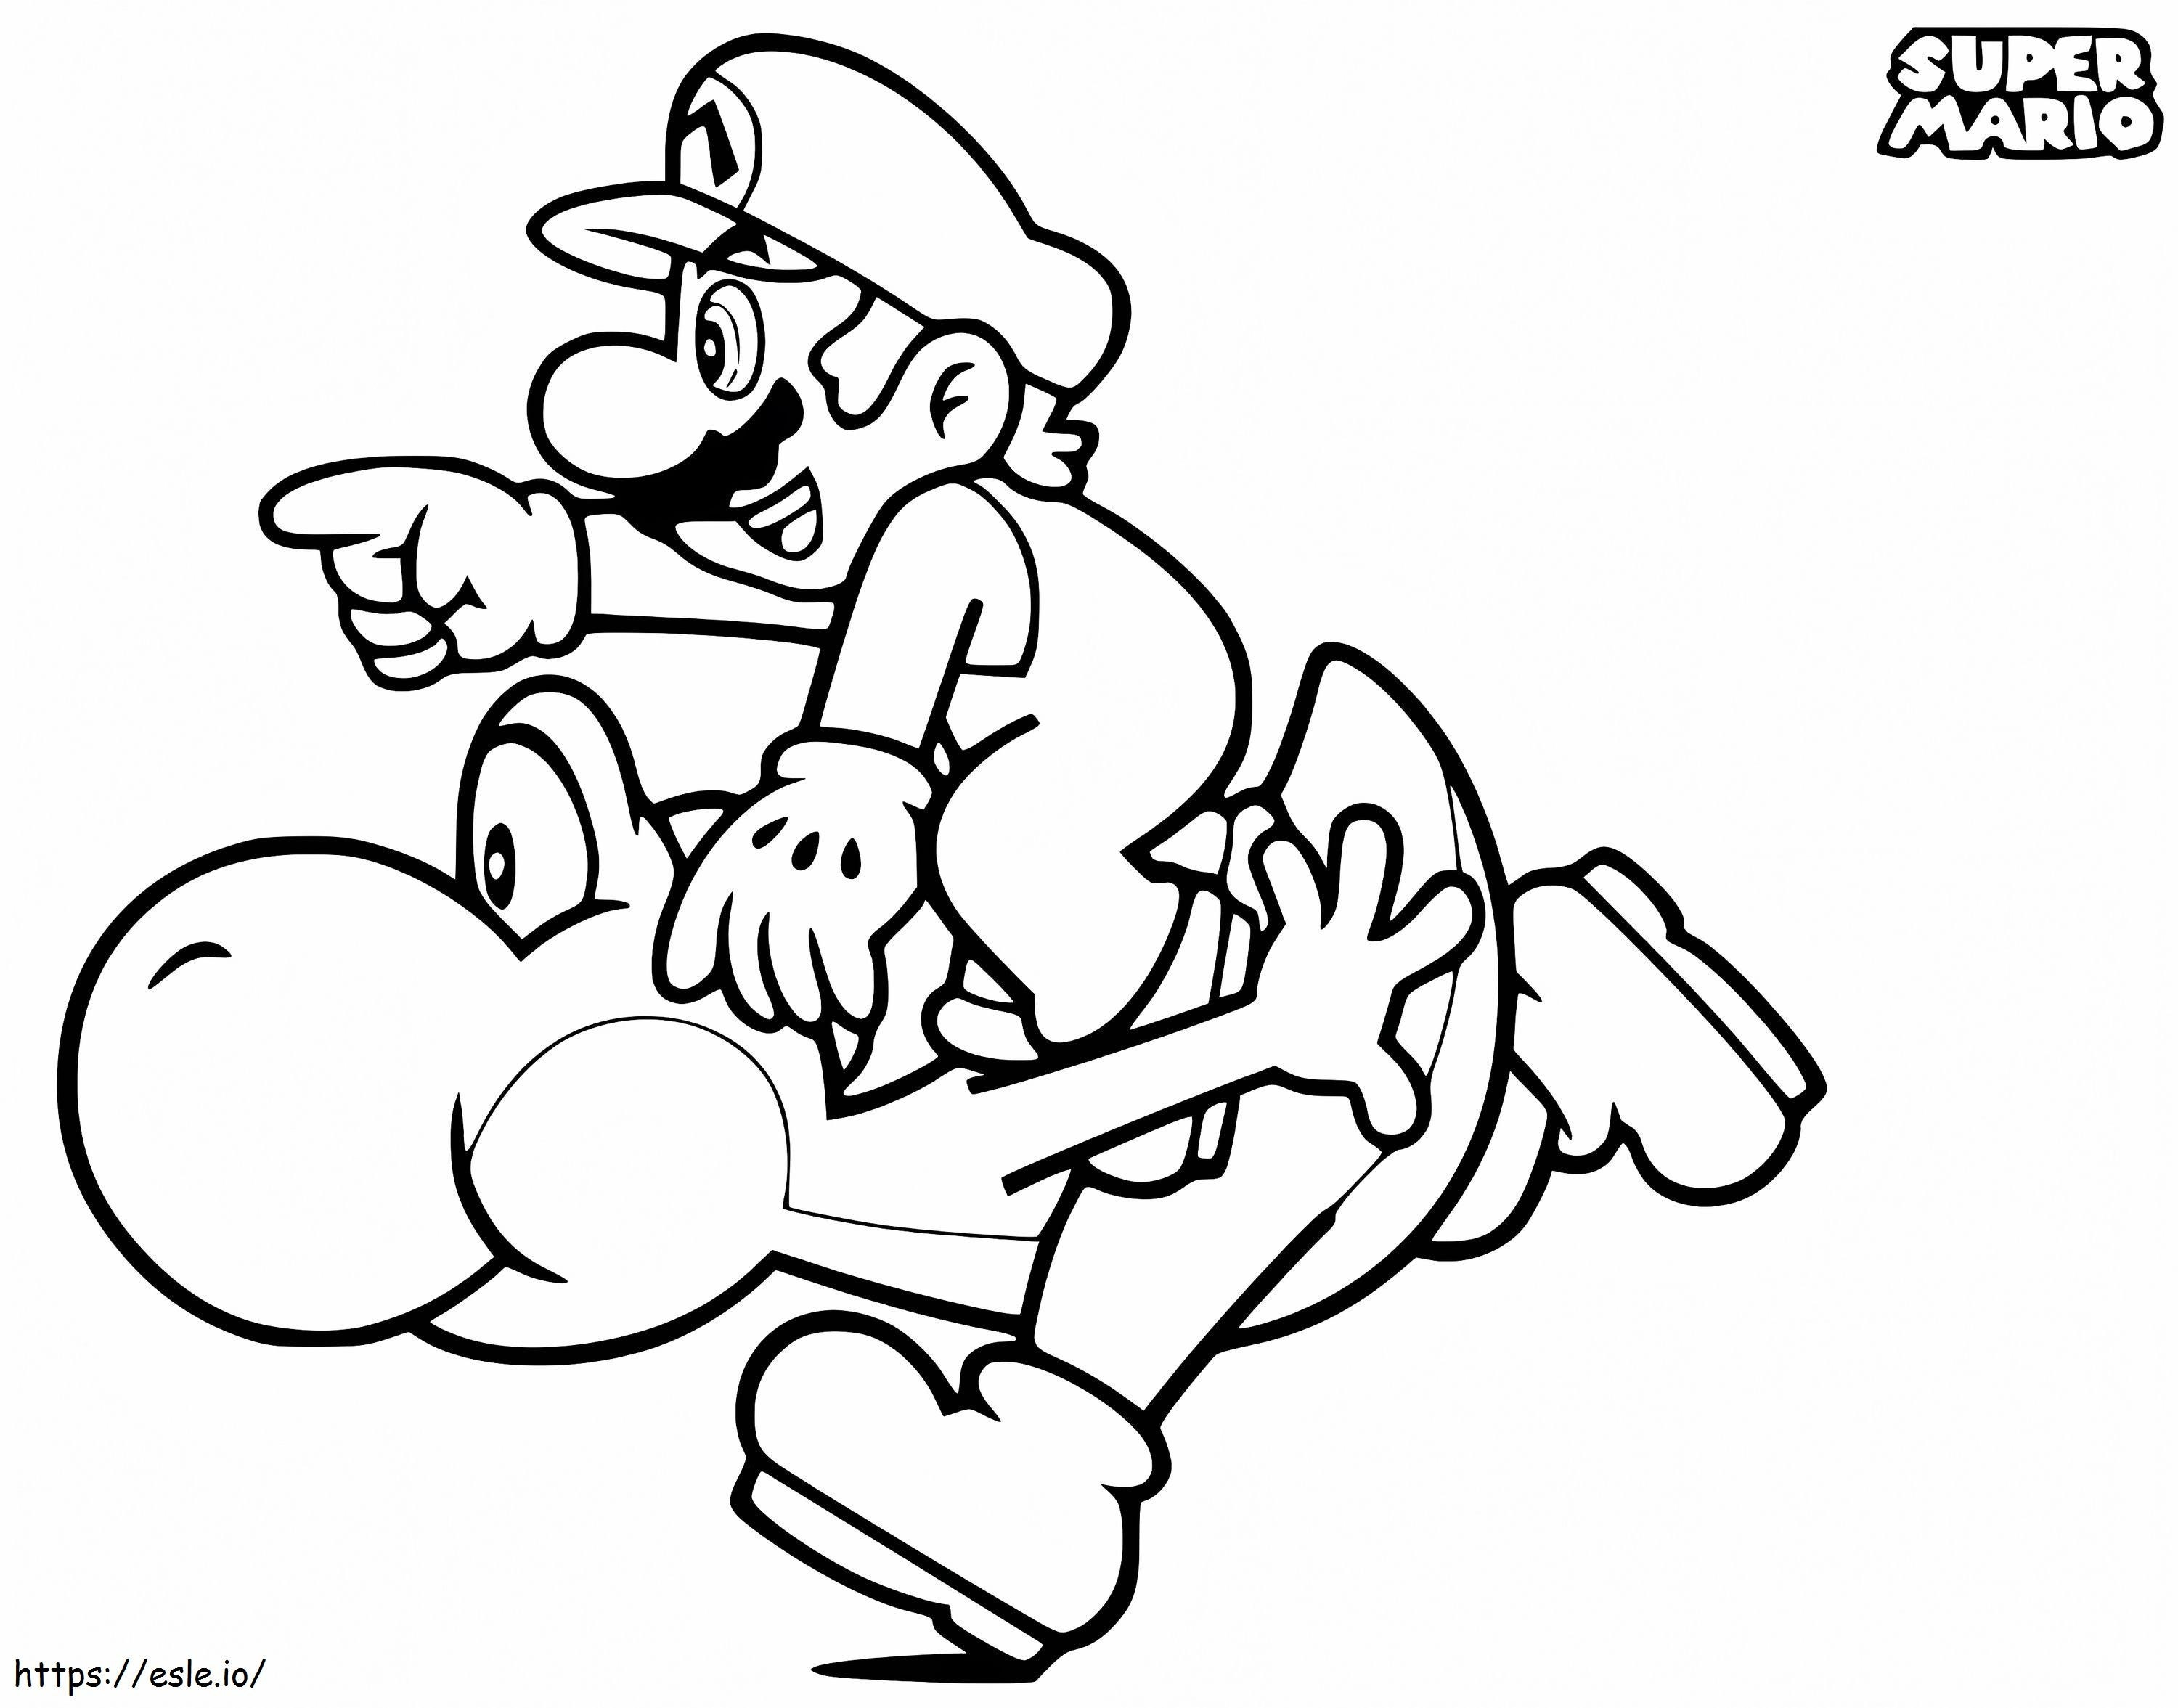 Mario Et Yoshi coloring page